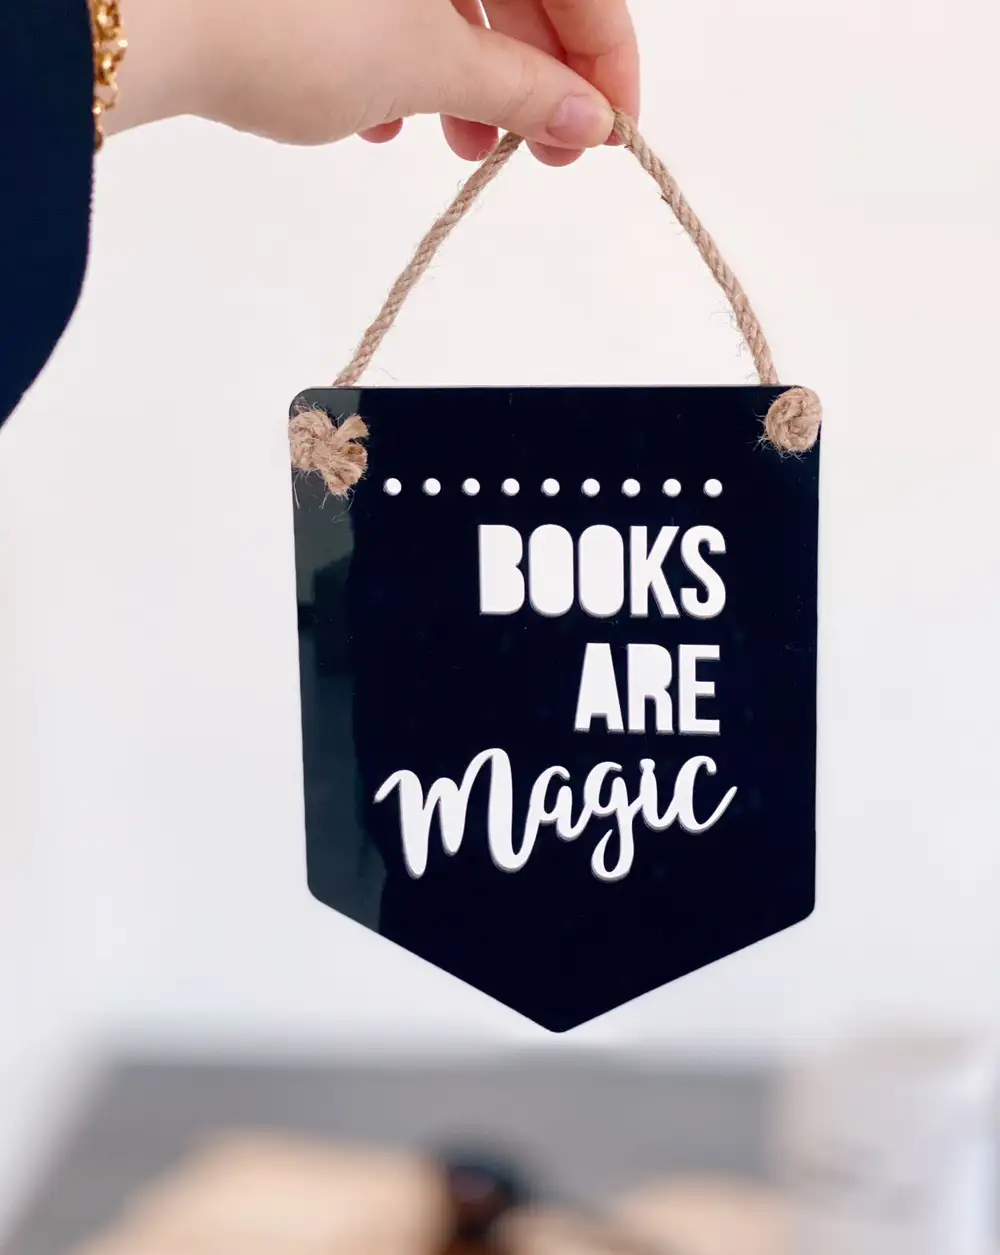 Books are magic siyah duvar süsü